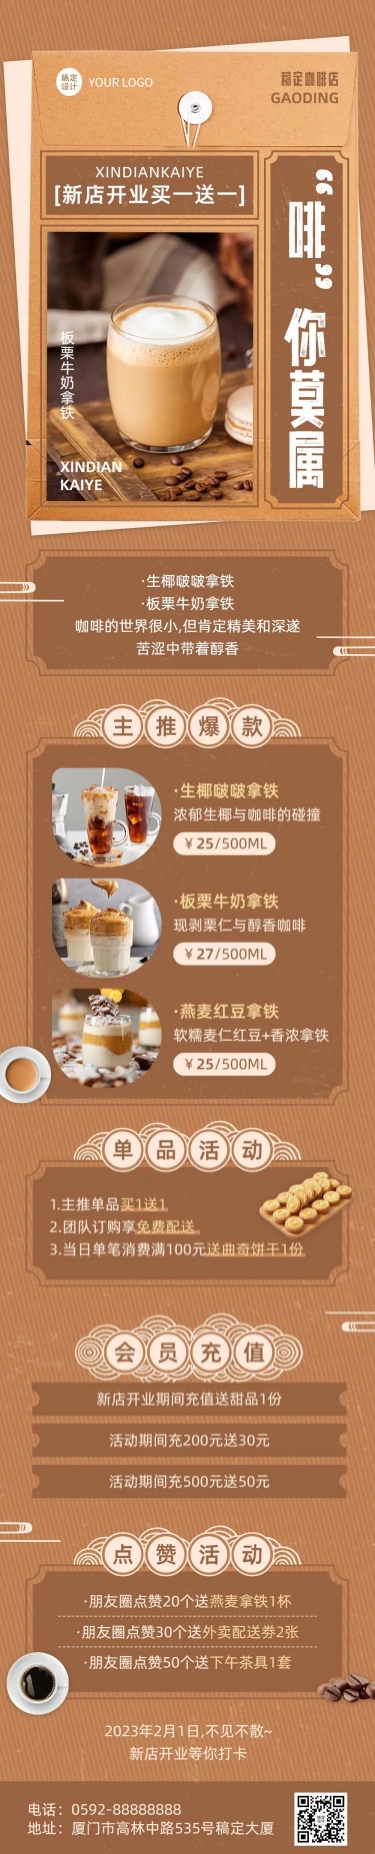 餐饮咖啡新店开业促销活动文章长图